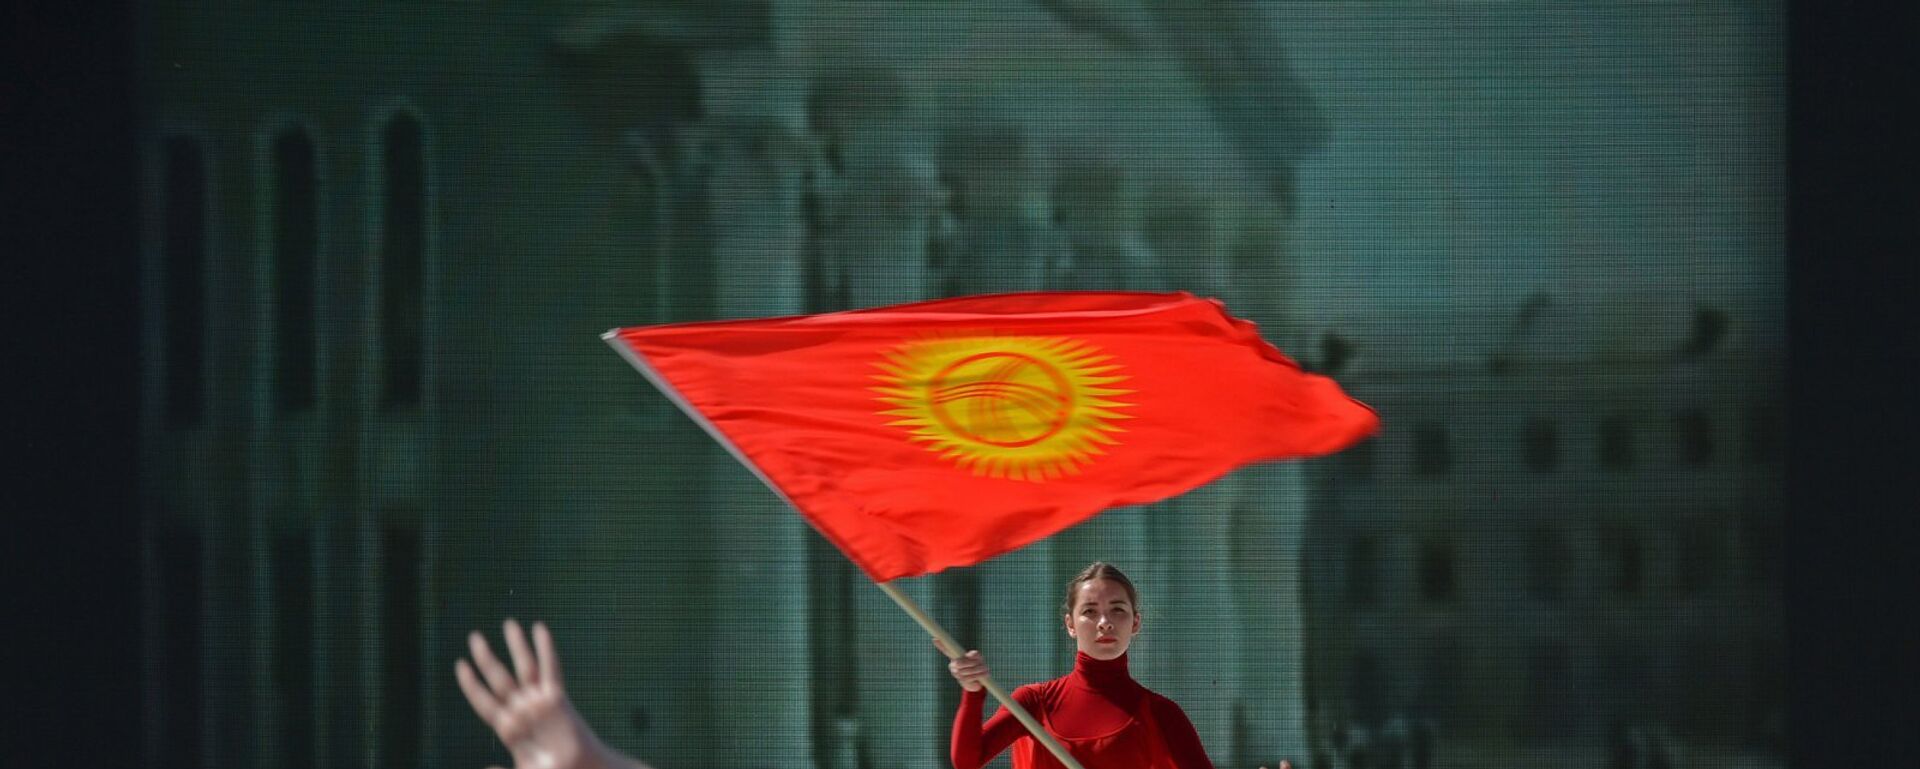 Сахнада оюн көрсөтүп жаткан артист. Архив - Sputnik Кыргызстан, 1920, 18.01.2016